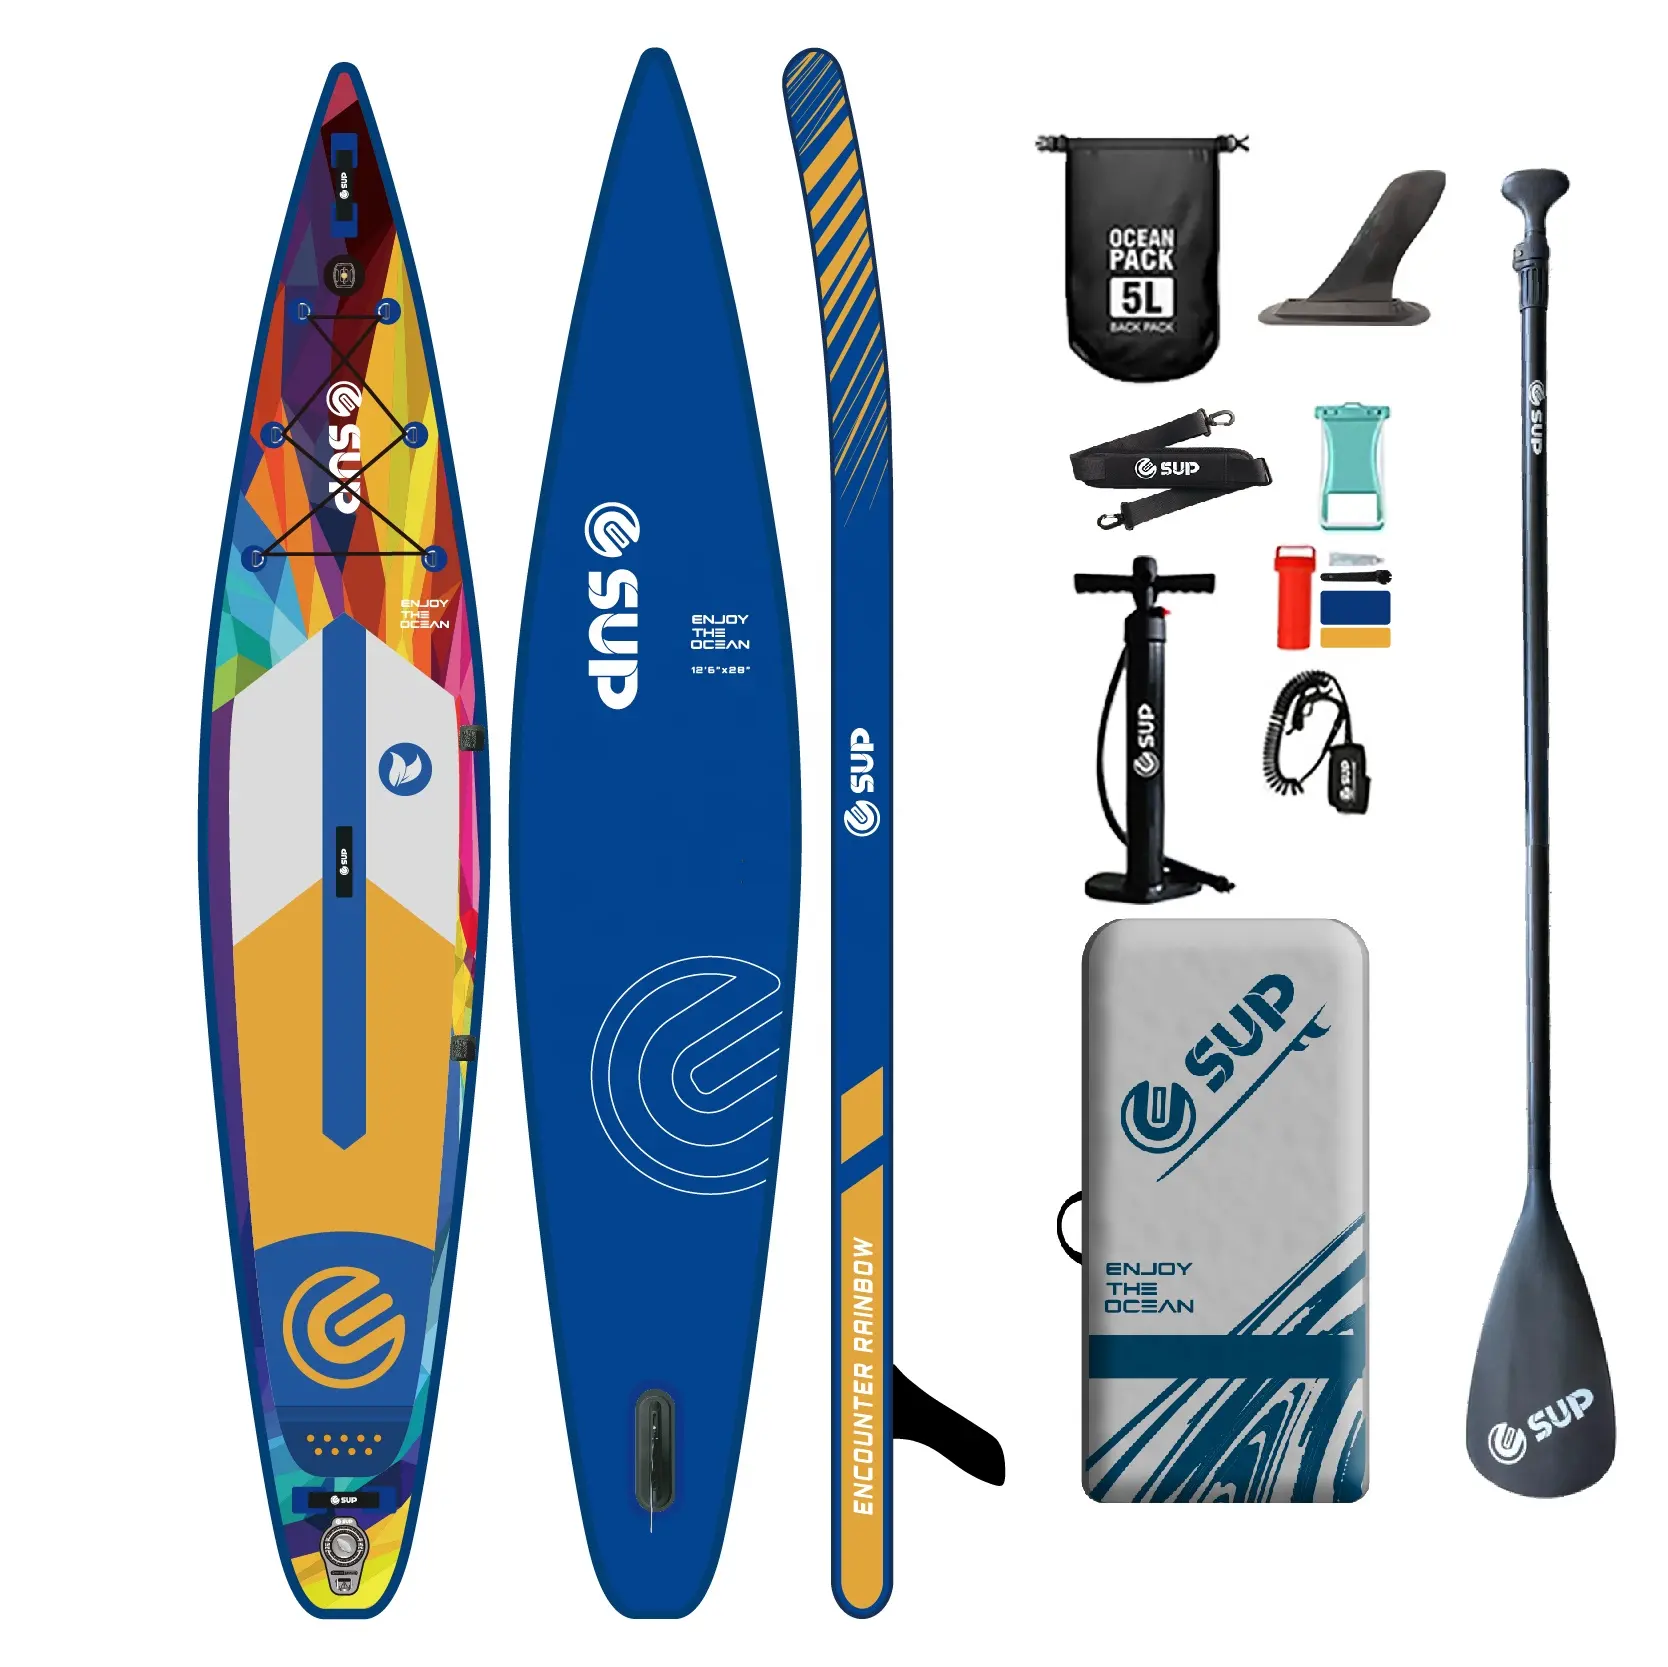 Planche à pagaie de course gonflable E SUP Paddel Surf planche à pagaie planche de course verrues paddleboard de sport